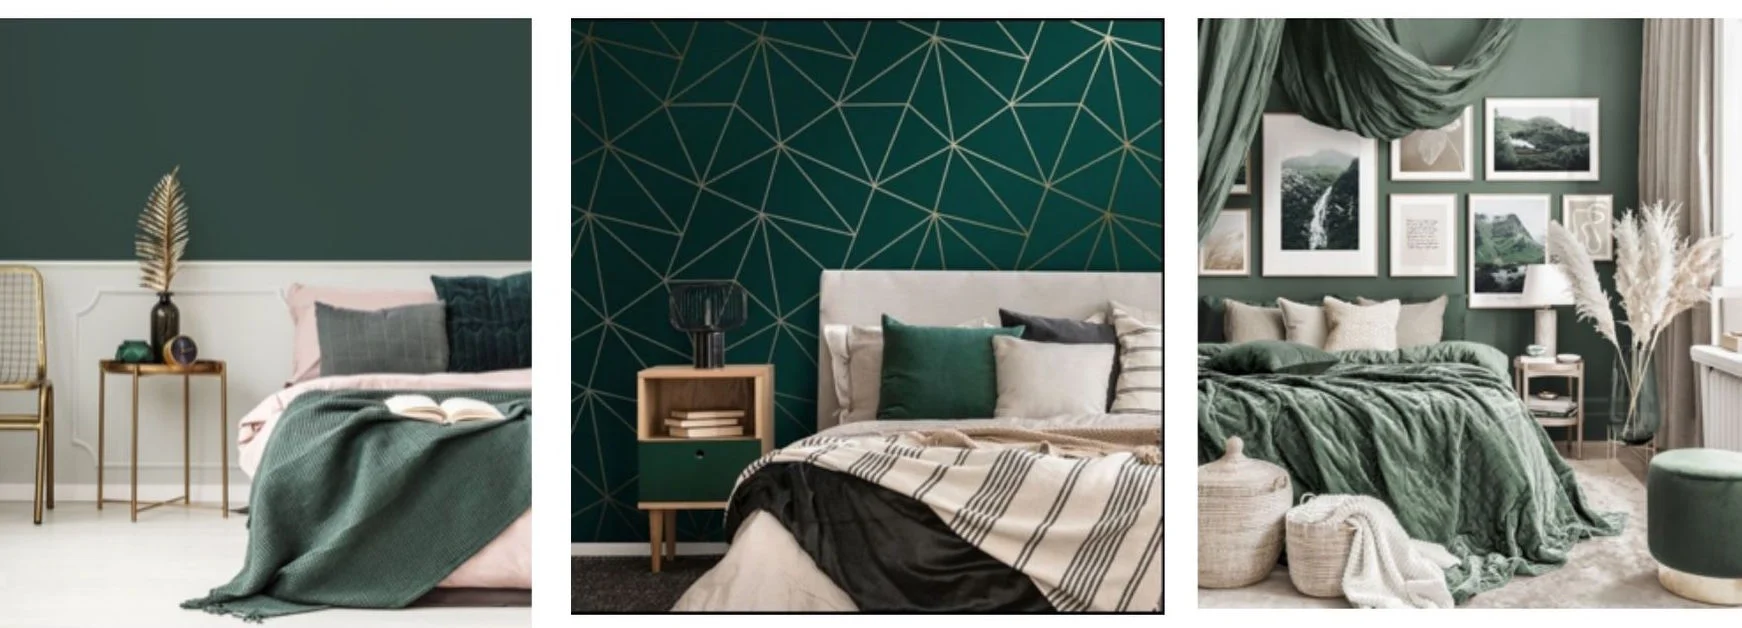 Chambre à coucher verte - un intérieur apaisant